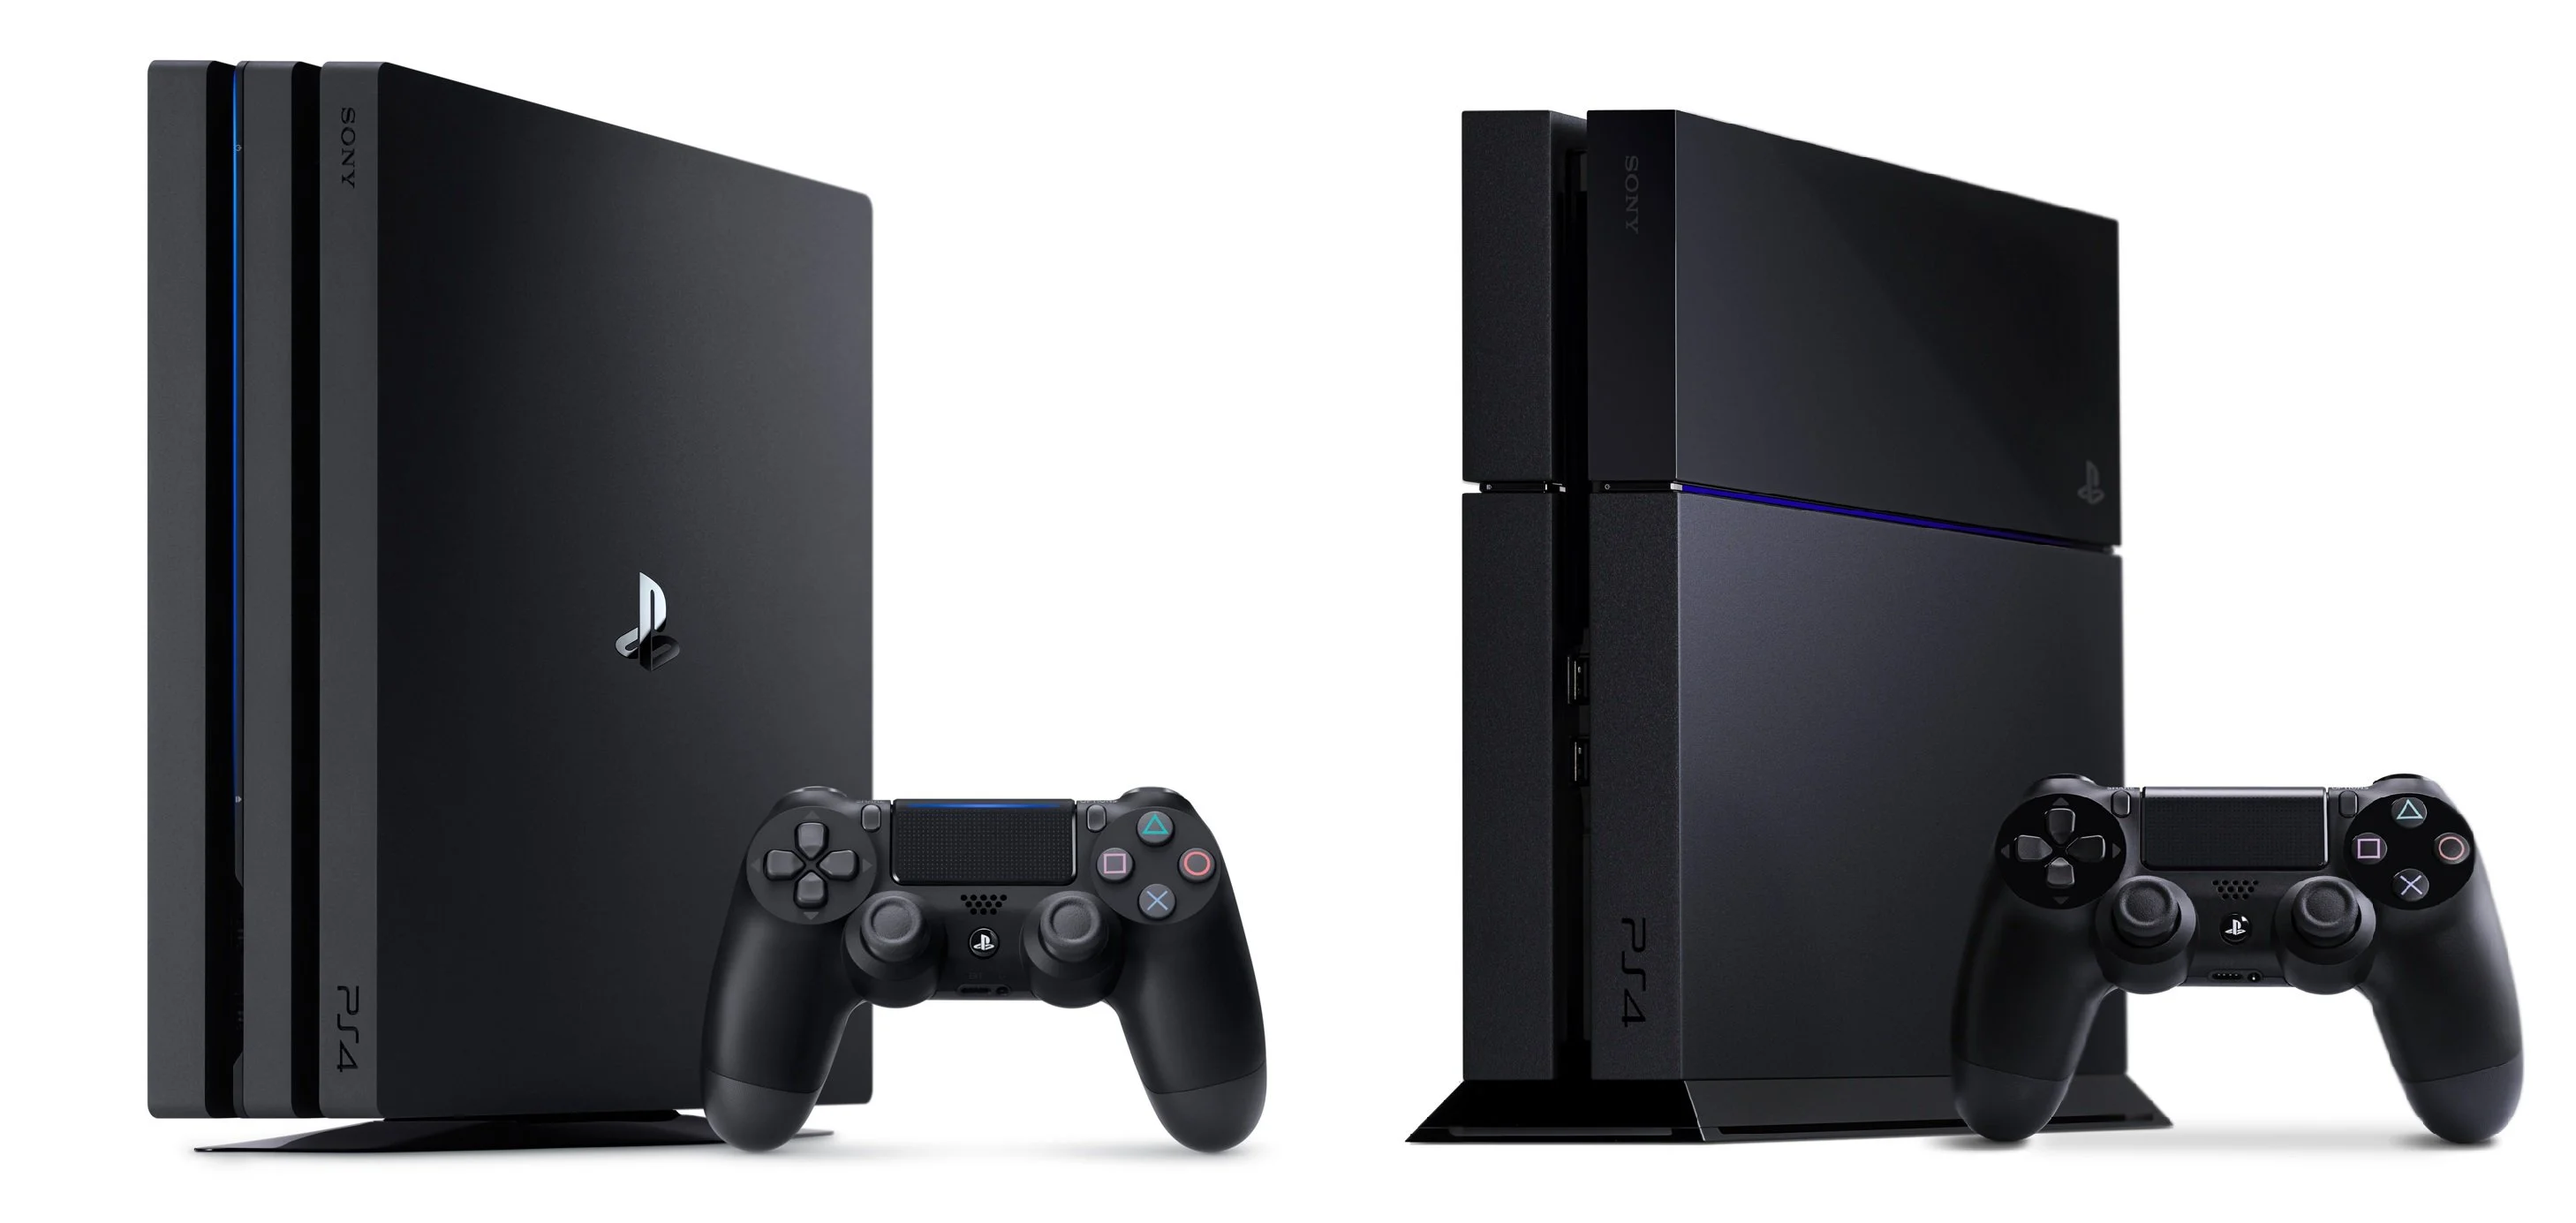 Вчера в продаже официально появилась PlayStation 4 Pro, но стоит ли сломя голову бежать за ней в магазин? Давайте вместе разберемся, что в ней полезного и нового.